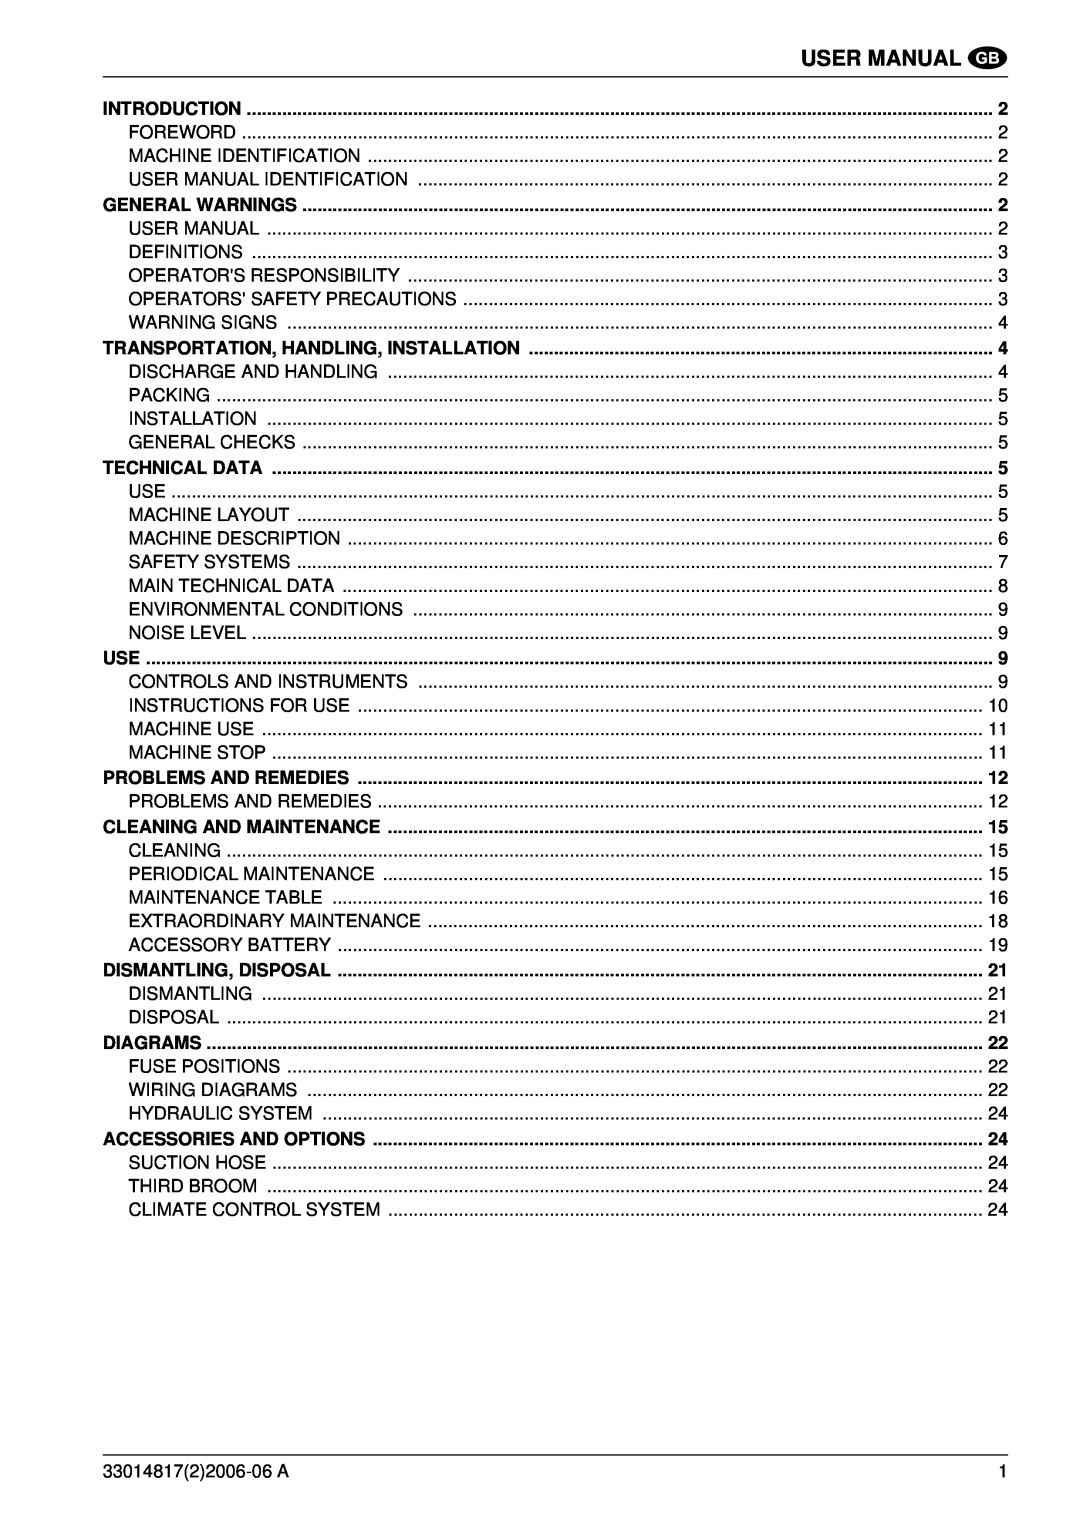 Nilfisk-ALTO SR1800C B-D manuel dutilisation User Manual, Hydraulic System 